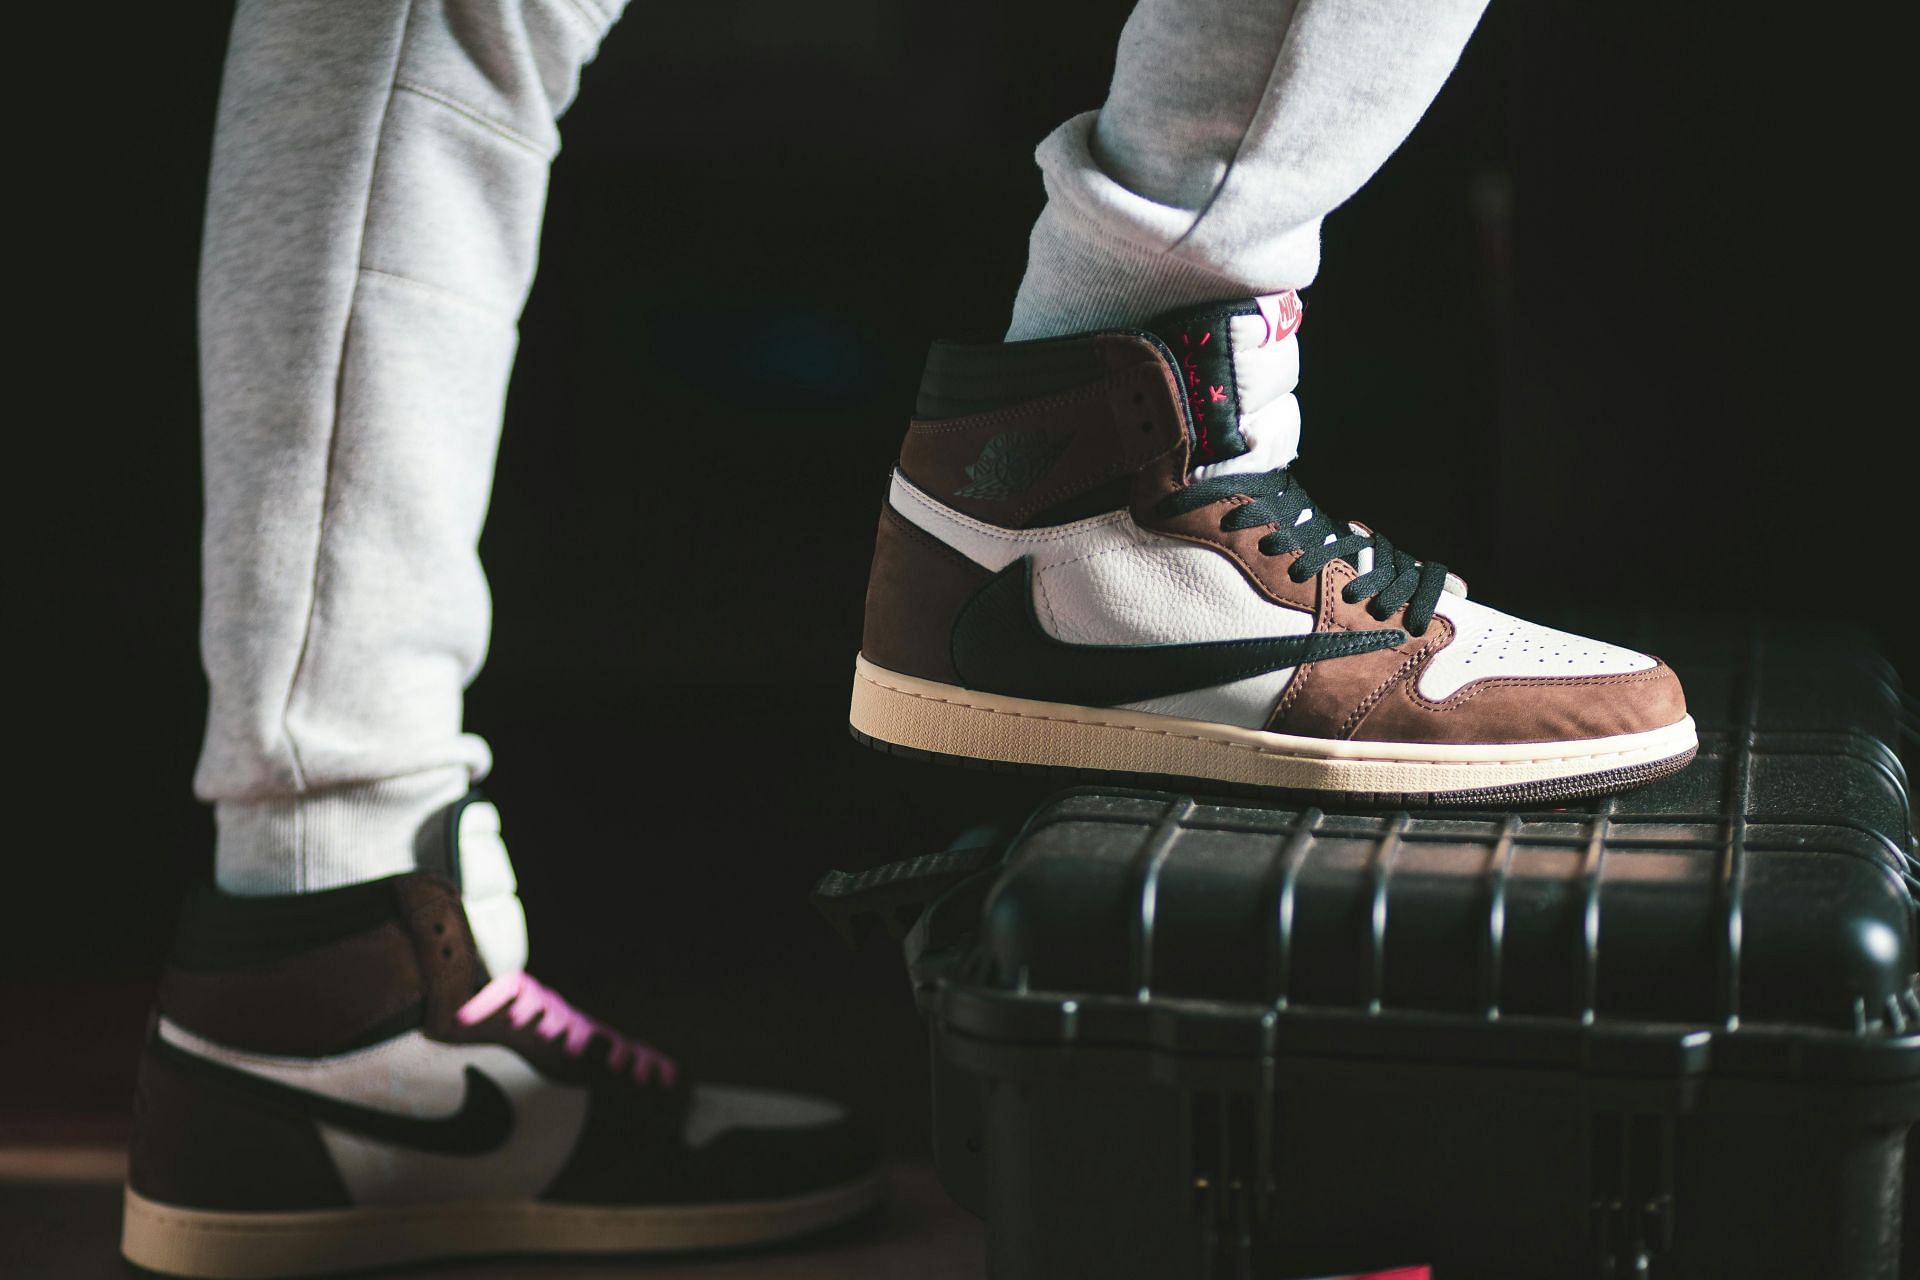 Clean Air Jordan 1 Sneaker (Image via Pexels/@Erik Mclean)